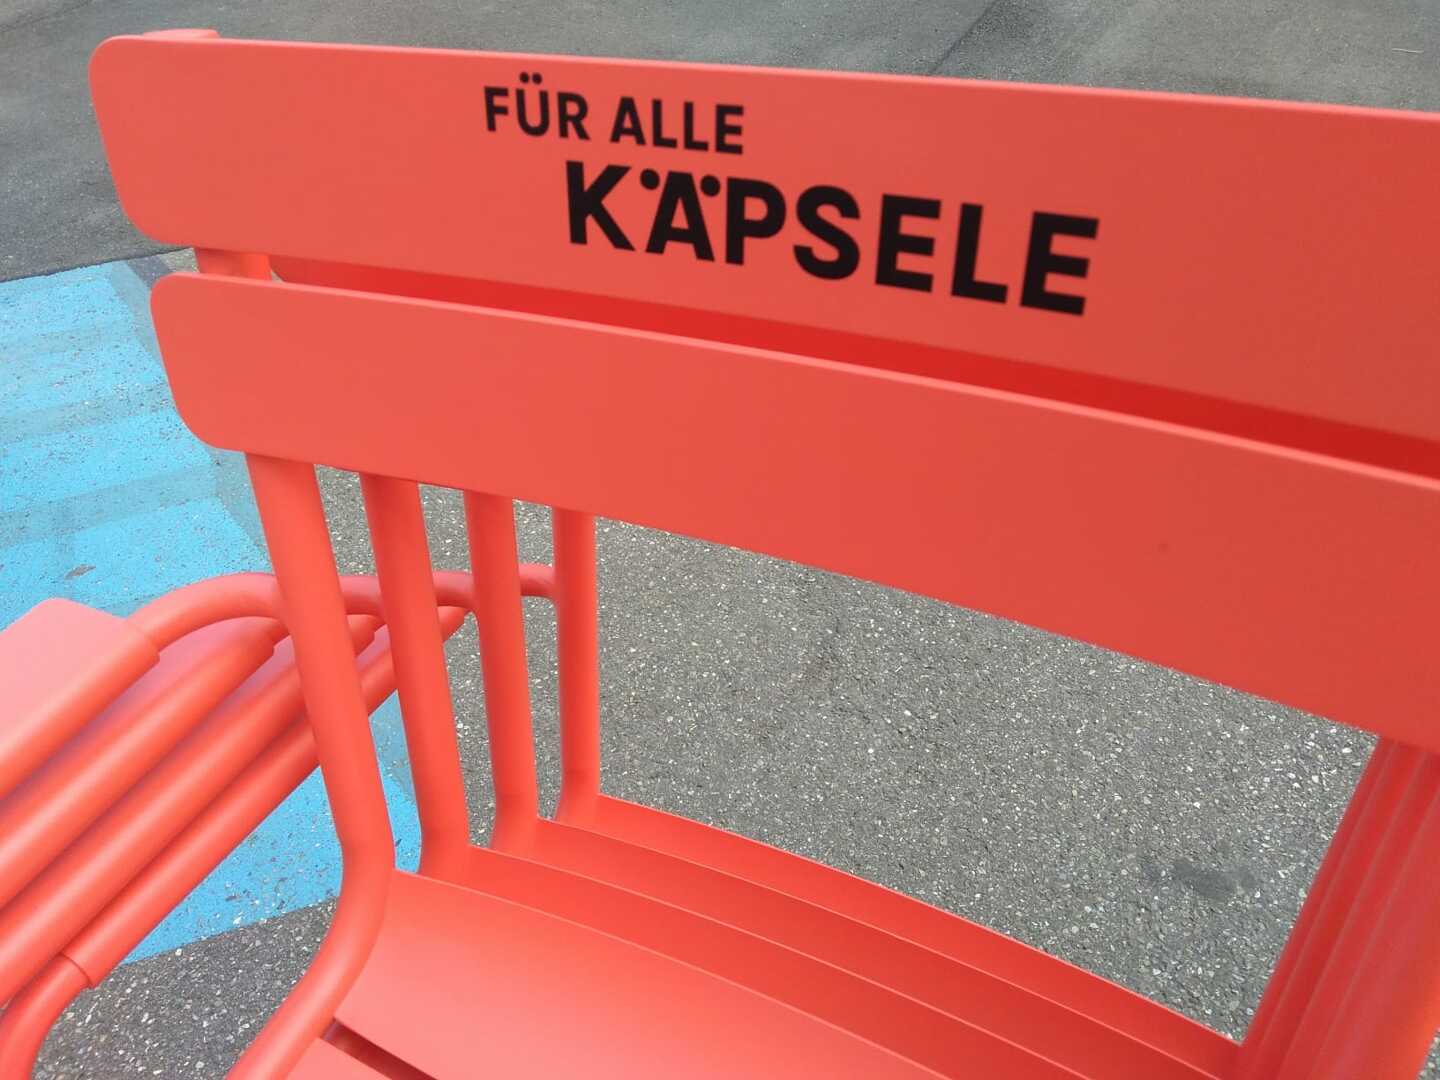 Detailaufnahme eines roten Stuhls mit der Aufschrift "Für alle Käpsele".